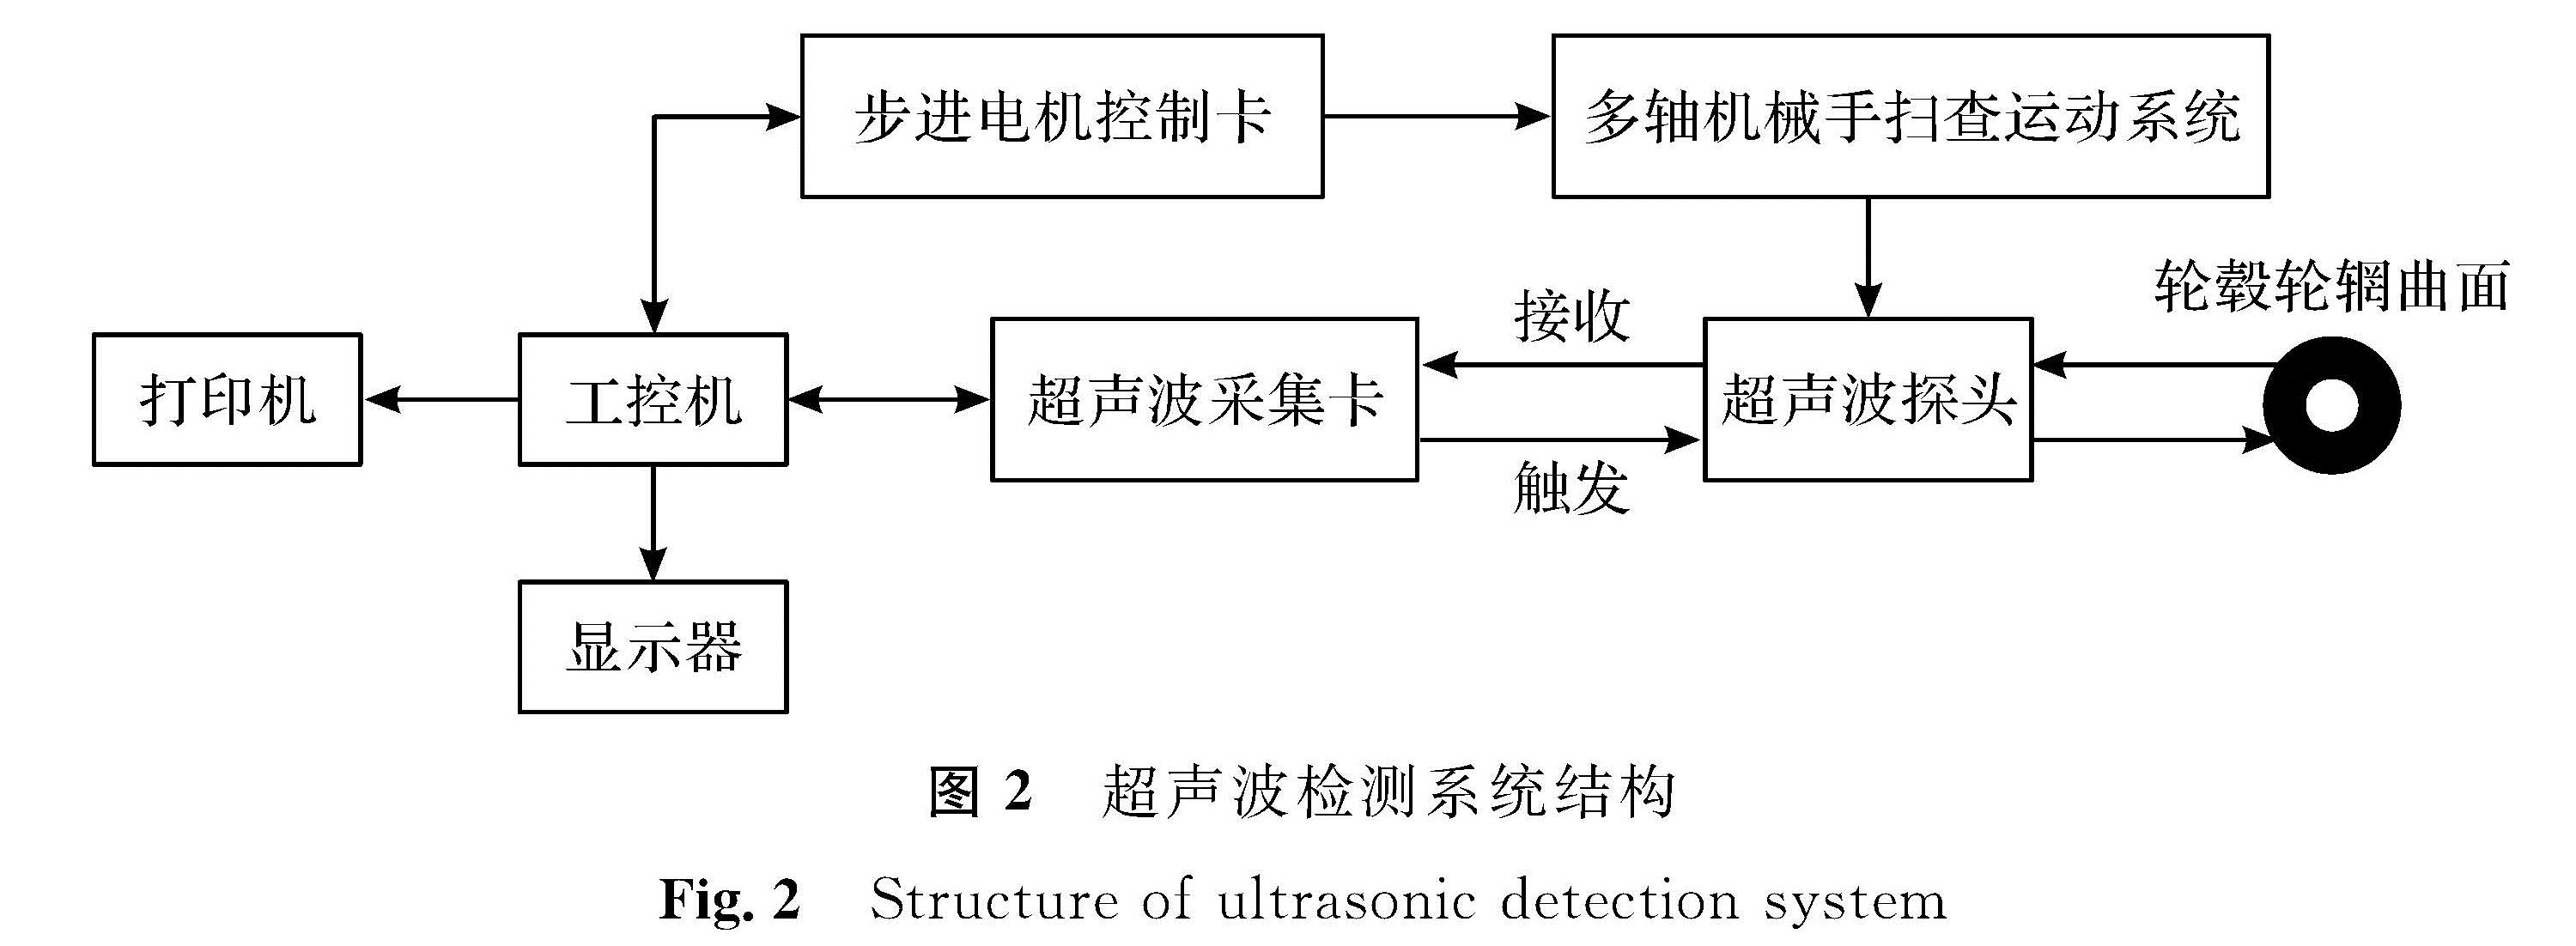 图2 超声波检测系统结构<br/>Fig.2 Structure of ultrasonic detection system